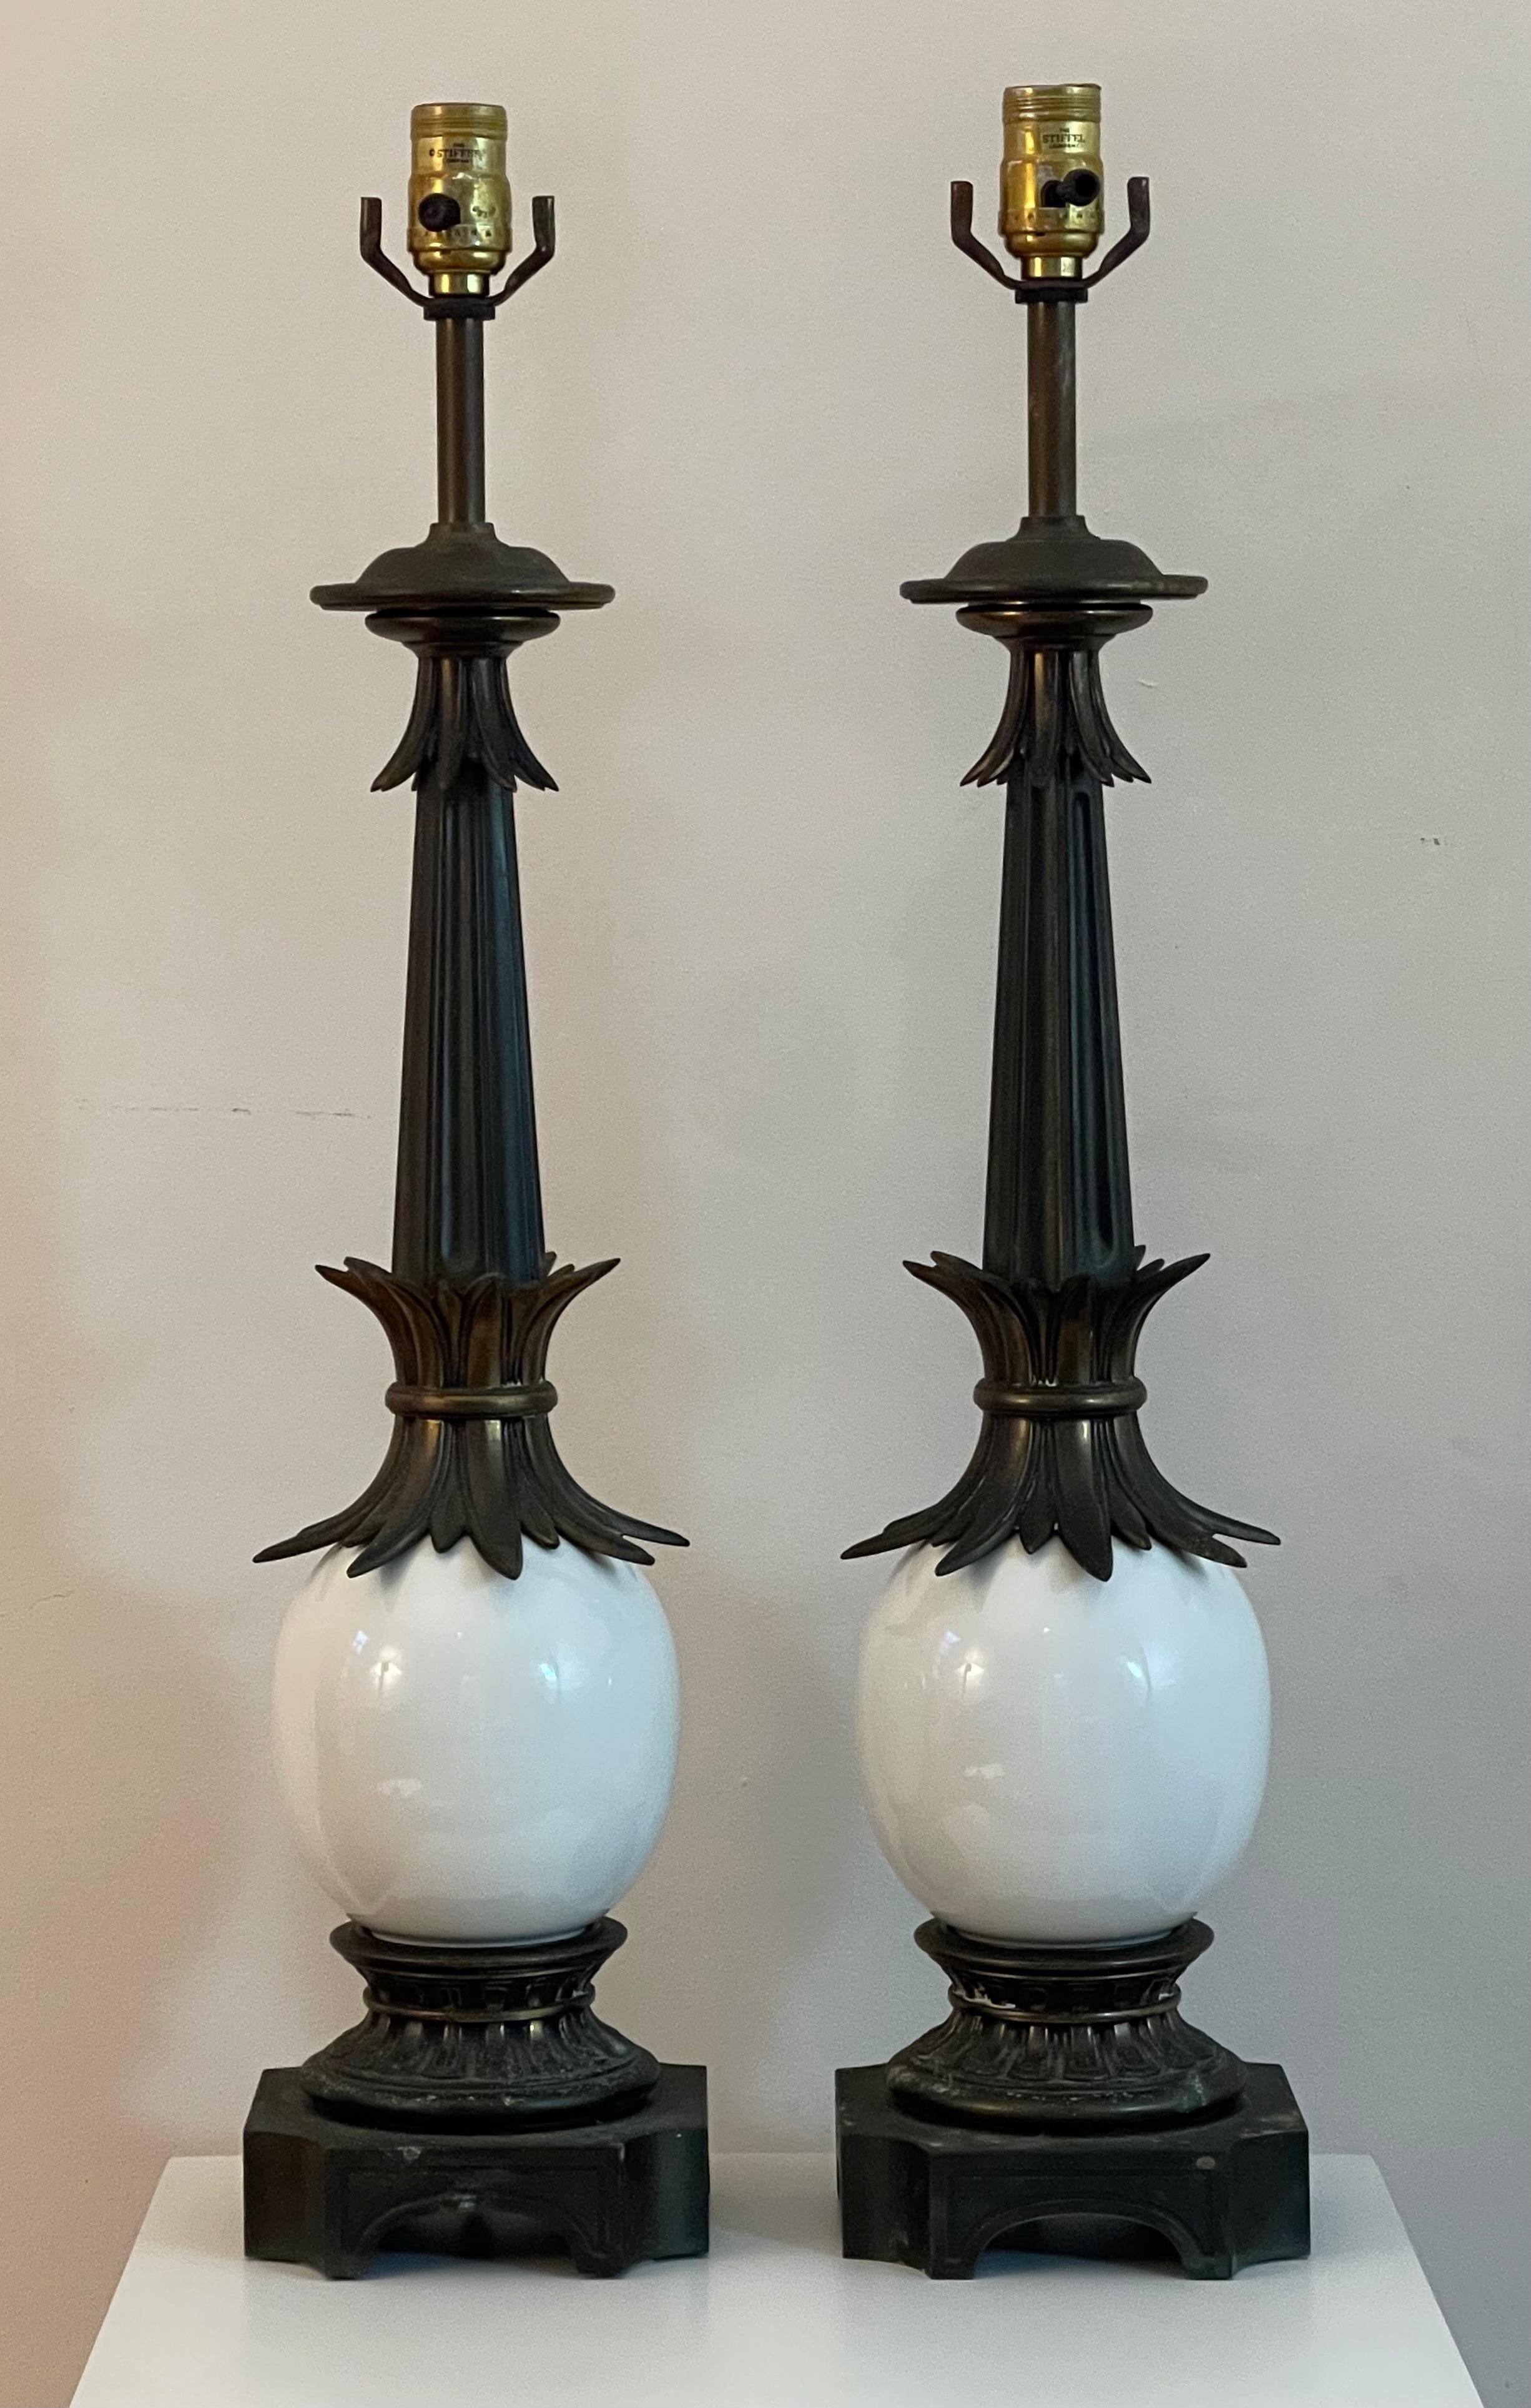 Schickes Paar Stiffel-Lampen aus der Mitte des Jahrhunderts mit ikonischem Straußeneikörper. Schöne, dunkle Bronzepatina auf den Zierelementen und dem Sockel aus Messing.

